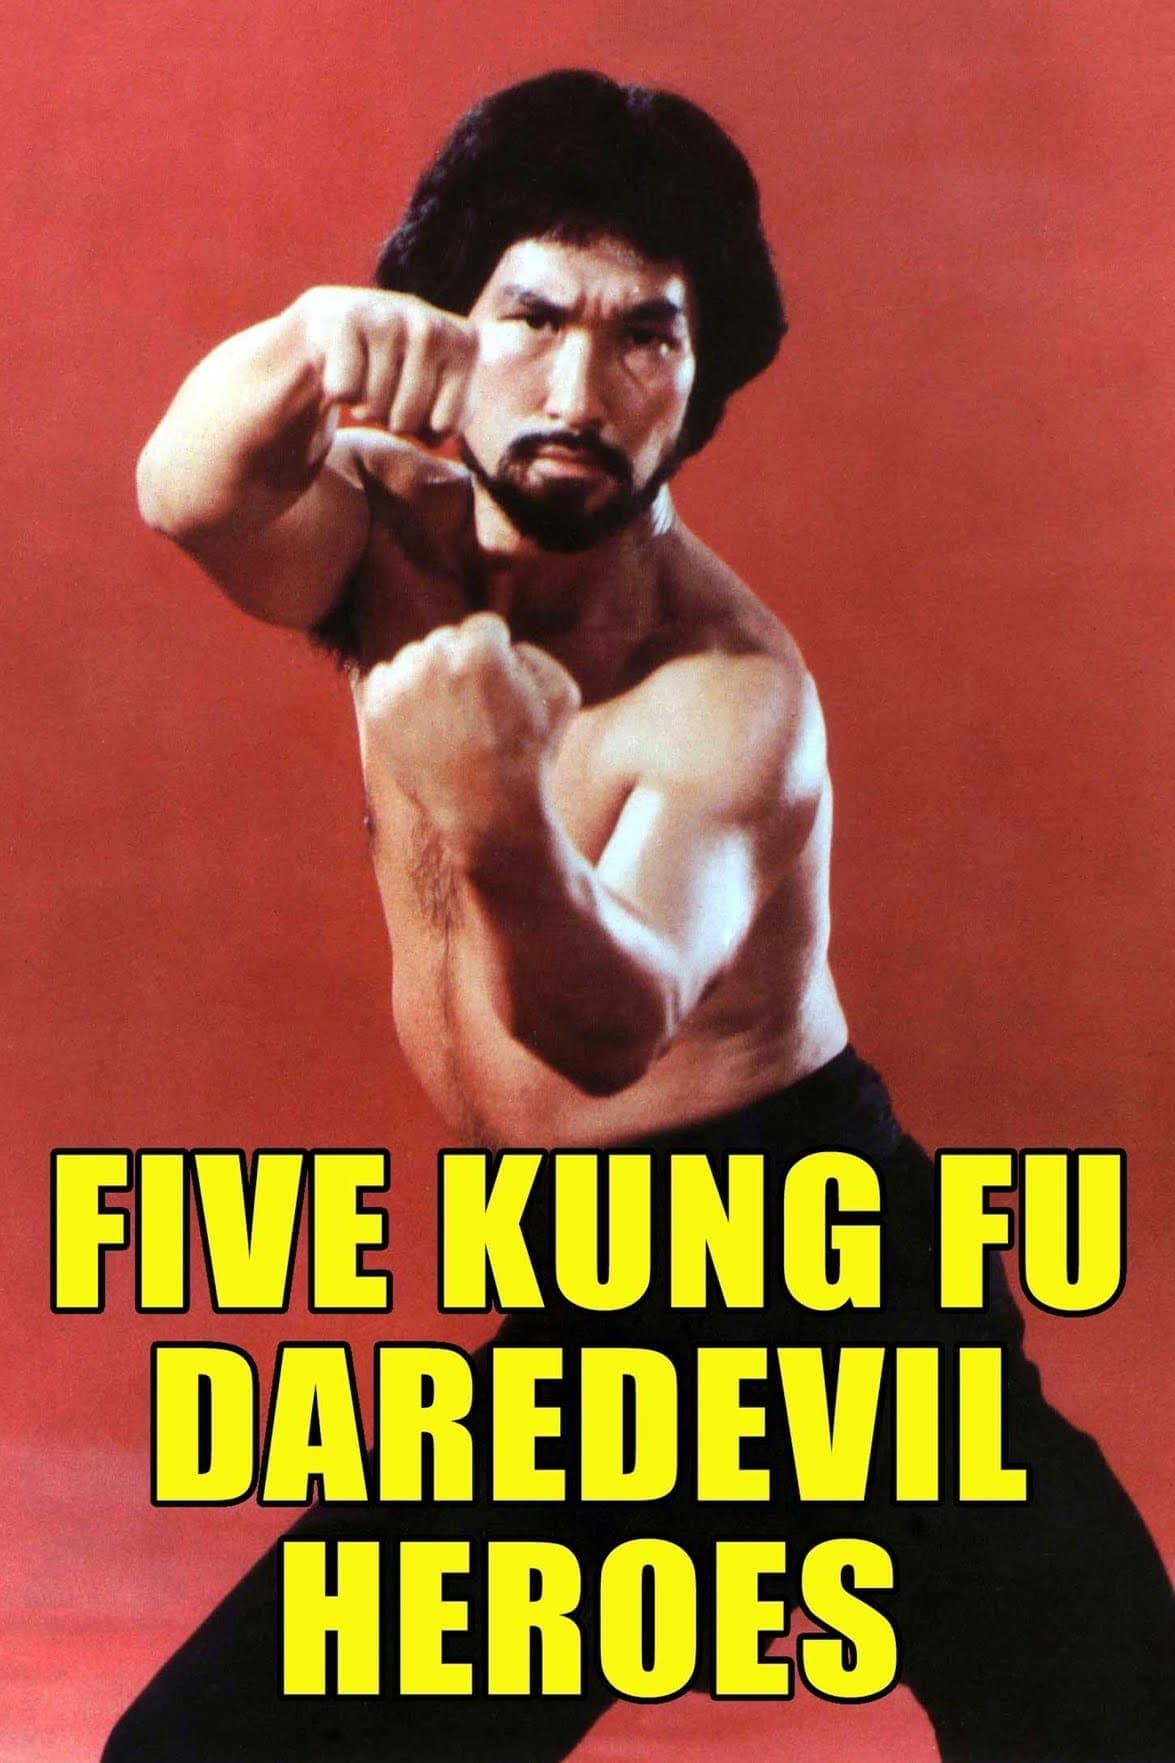 Five Kung Fu Daredevil Heroes (1977)